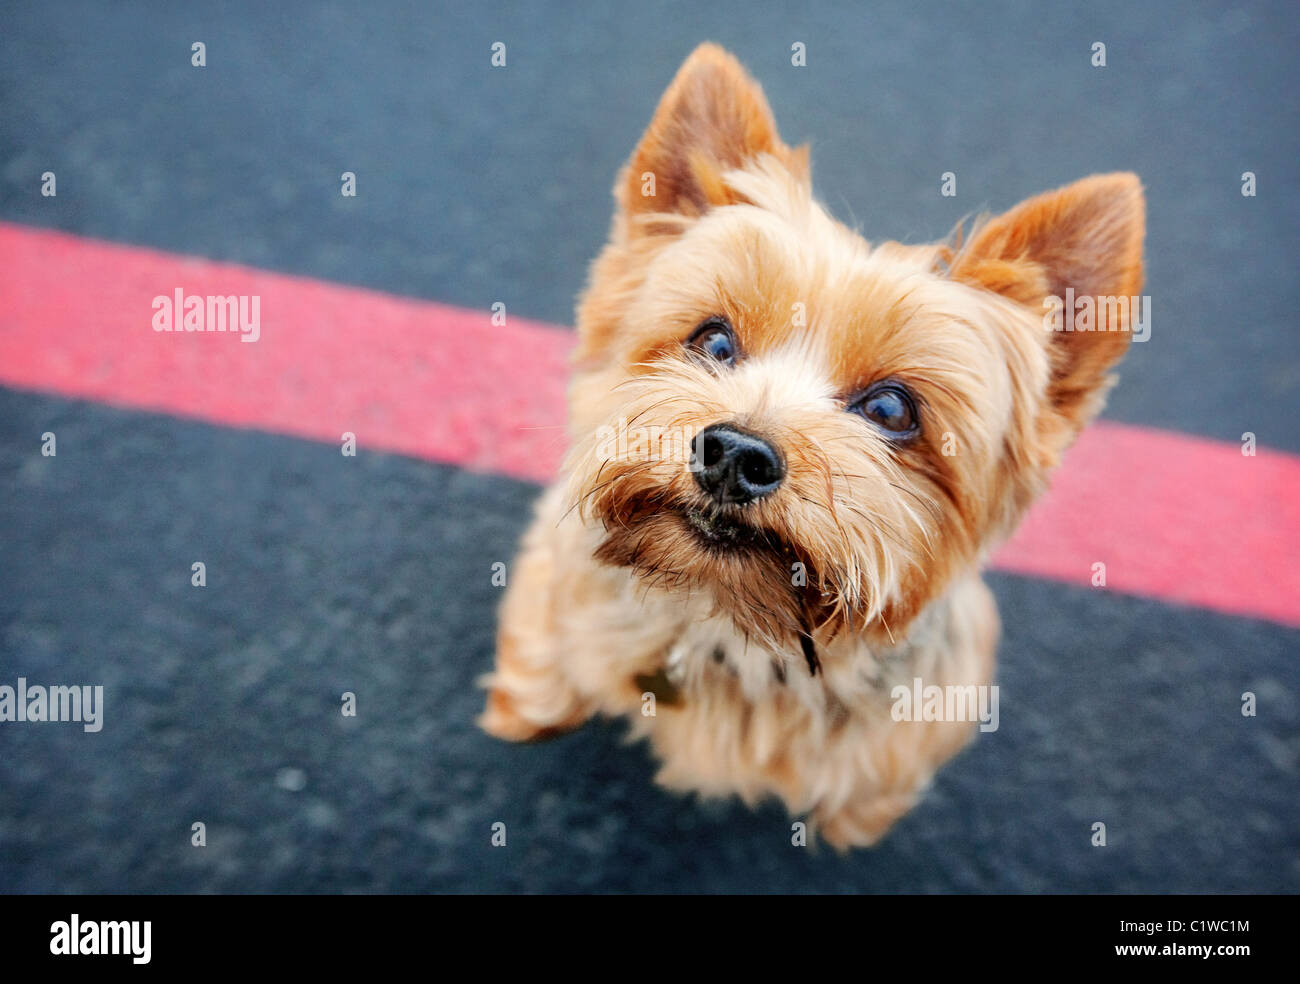 Yorkshire Terrier Hund auf seinen Hinterbeinen Kamera blickte. Stehend auf schwarzem Asphalt mit einer roten Linie. Stockfoto